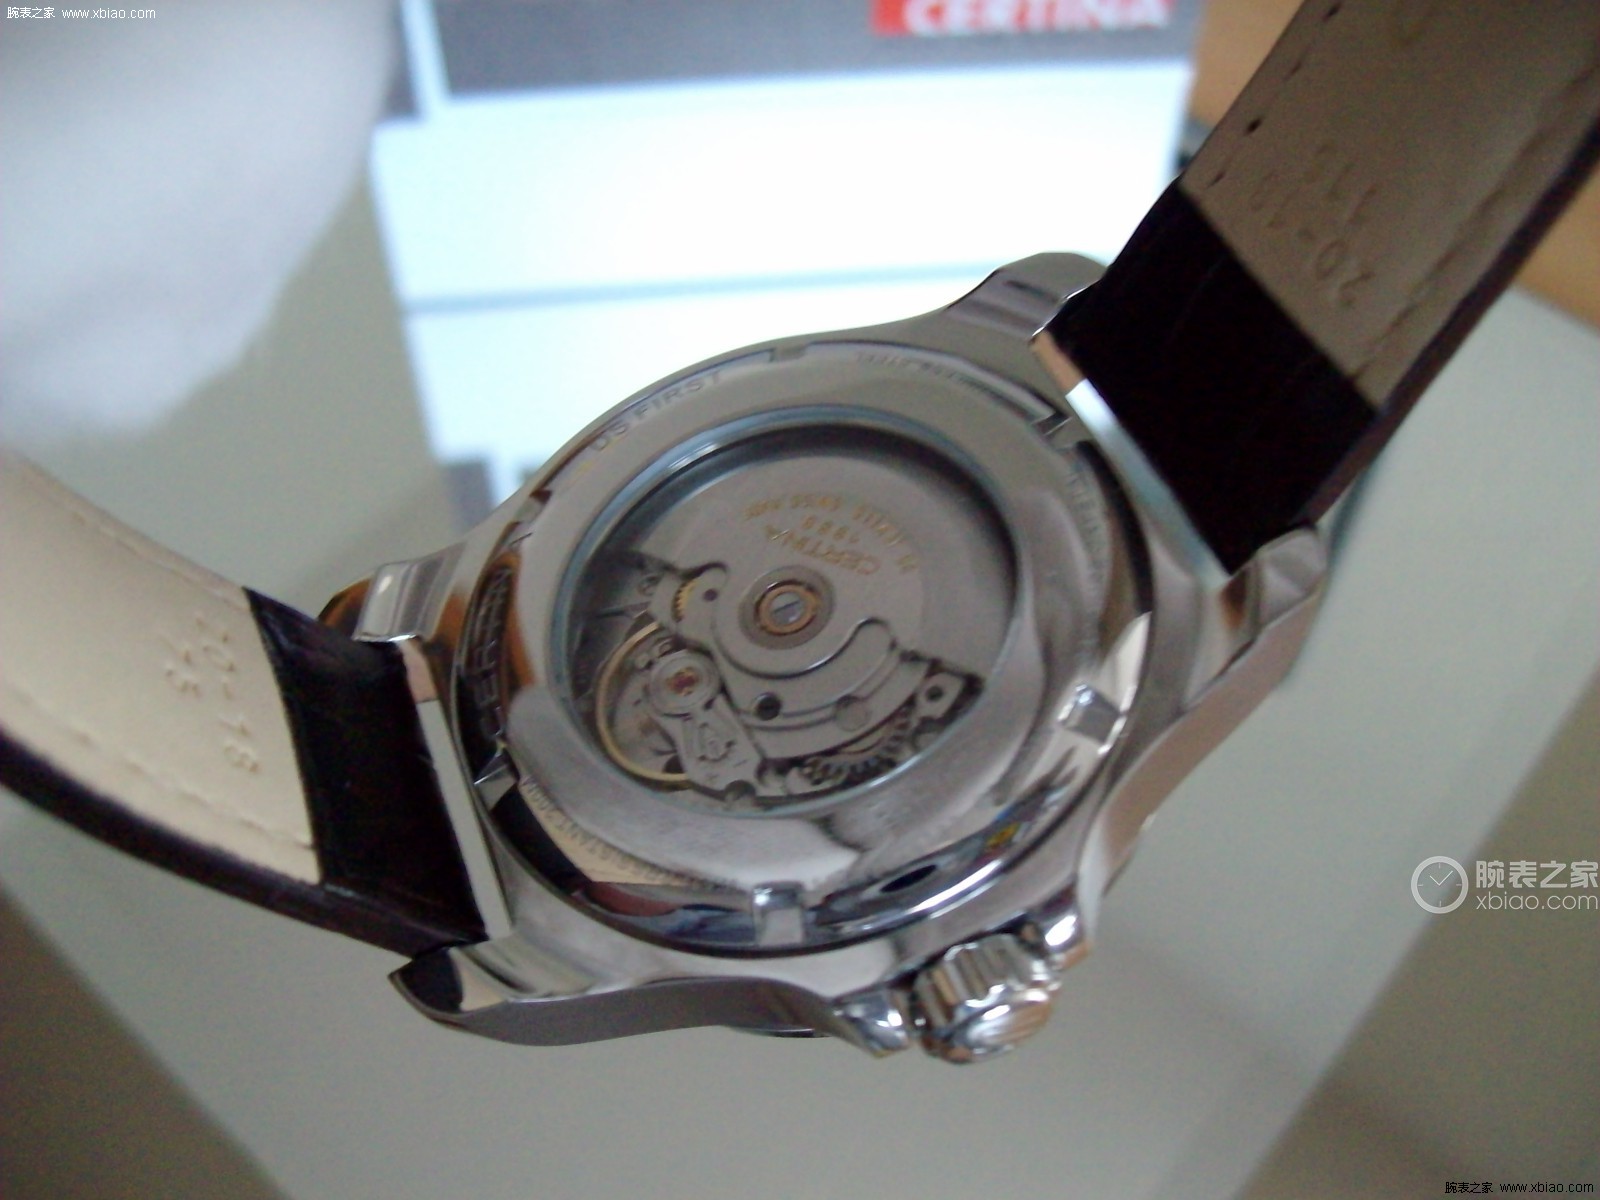 高清图|雪铁纳传承元素DS-1 喜马拉雅系列80小时长动力特别版腕表C029.426.11.091.60图片|腕表之家xbiao.com